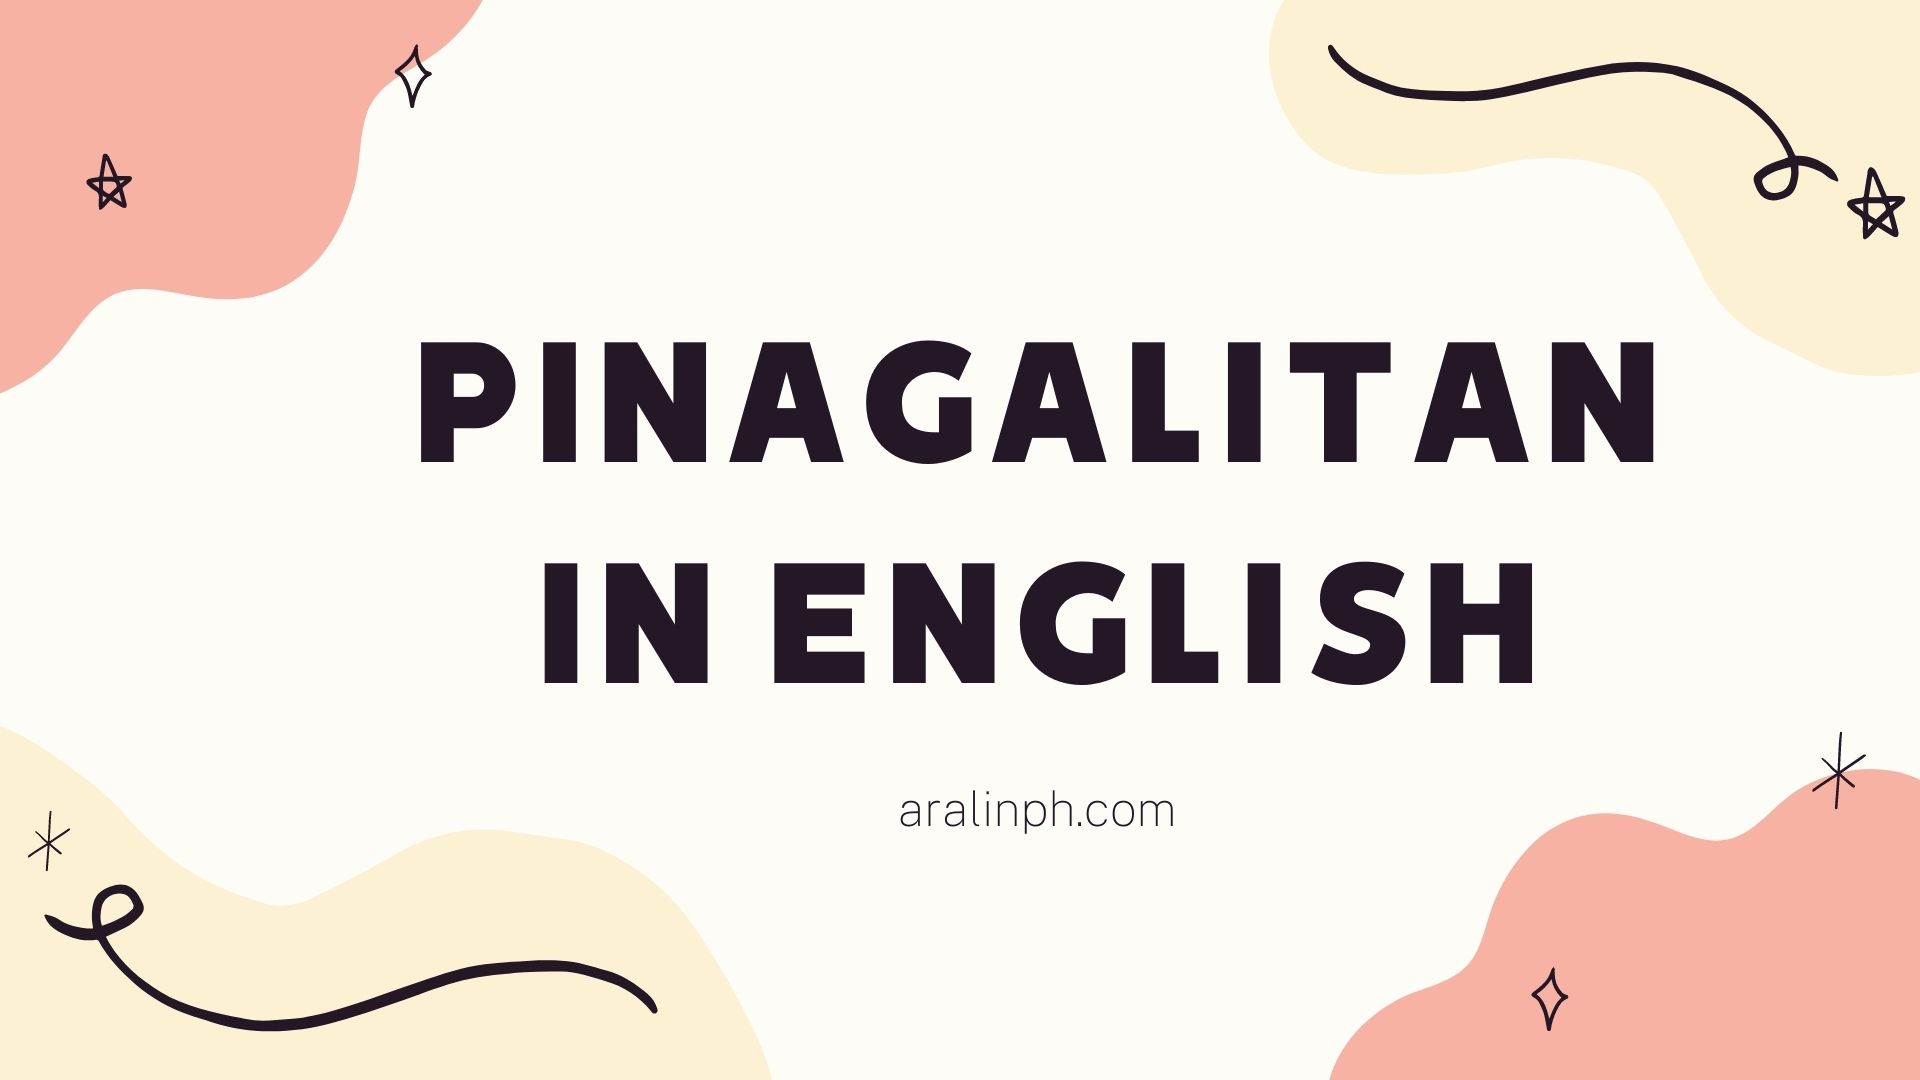 PINAGALITAN IN ENGLISH